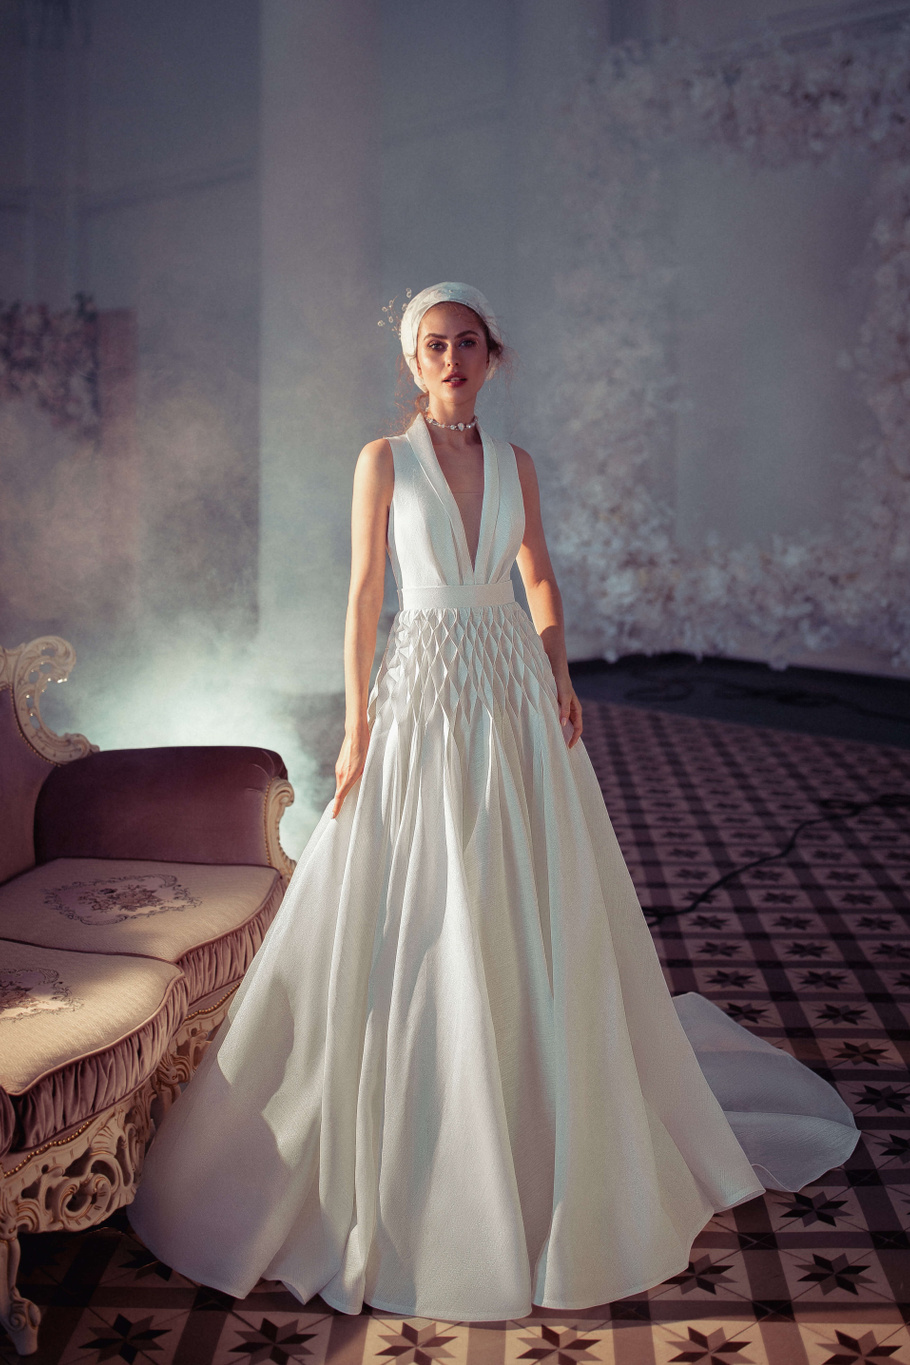 Купить свадебное платье «Астриа» Бламмо Биамо из коллекции Свит Лайф 2021 года в Нижнем Новгороде